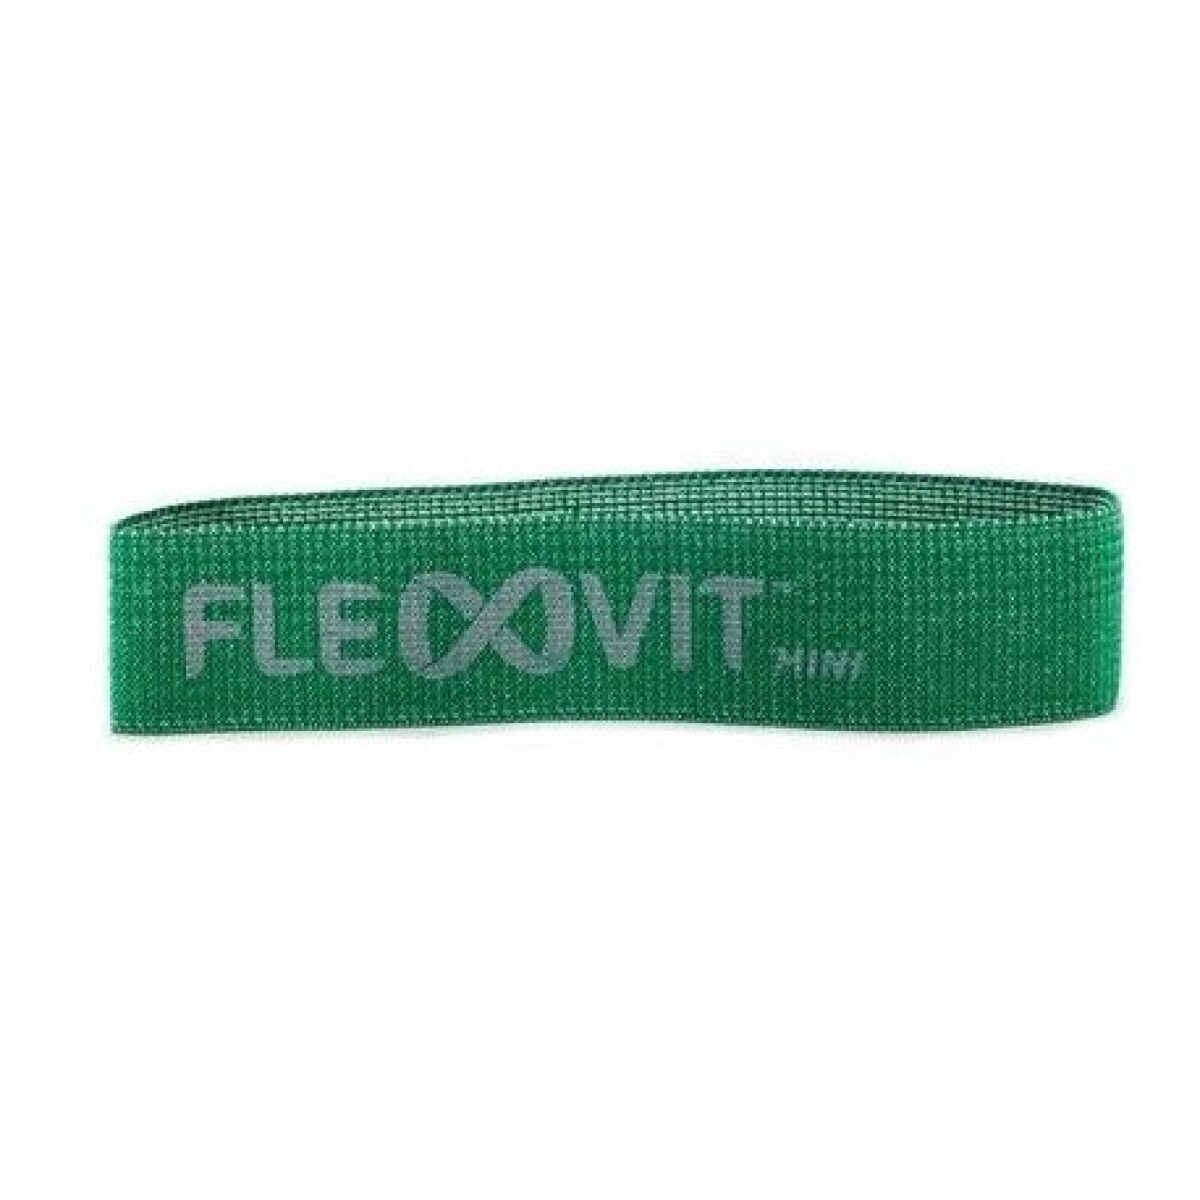 Banda Elástica Flexvit Mini Band - N°4 Verde 